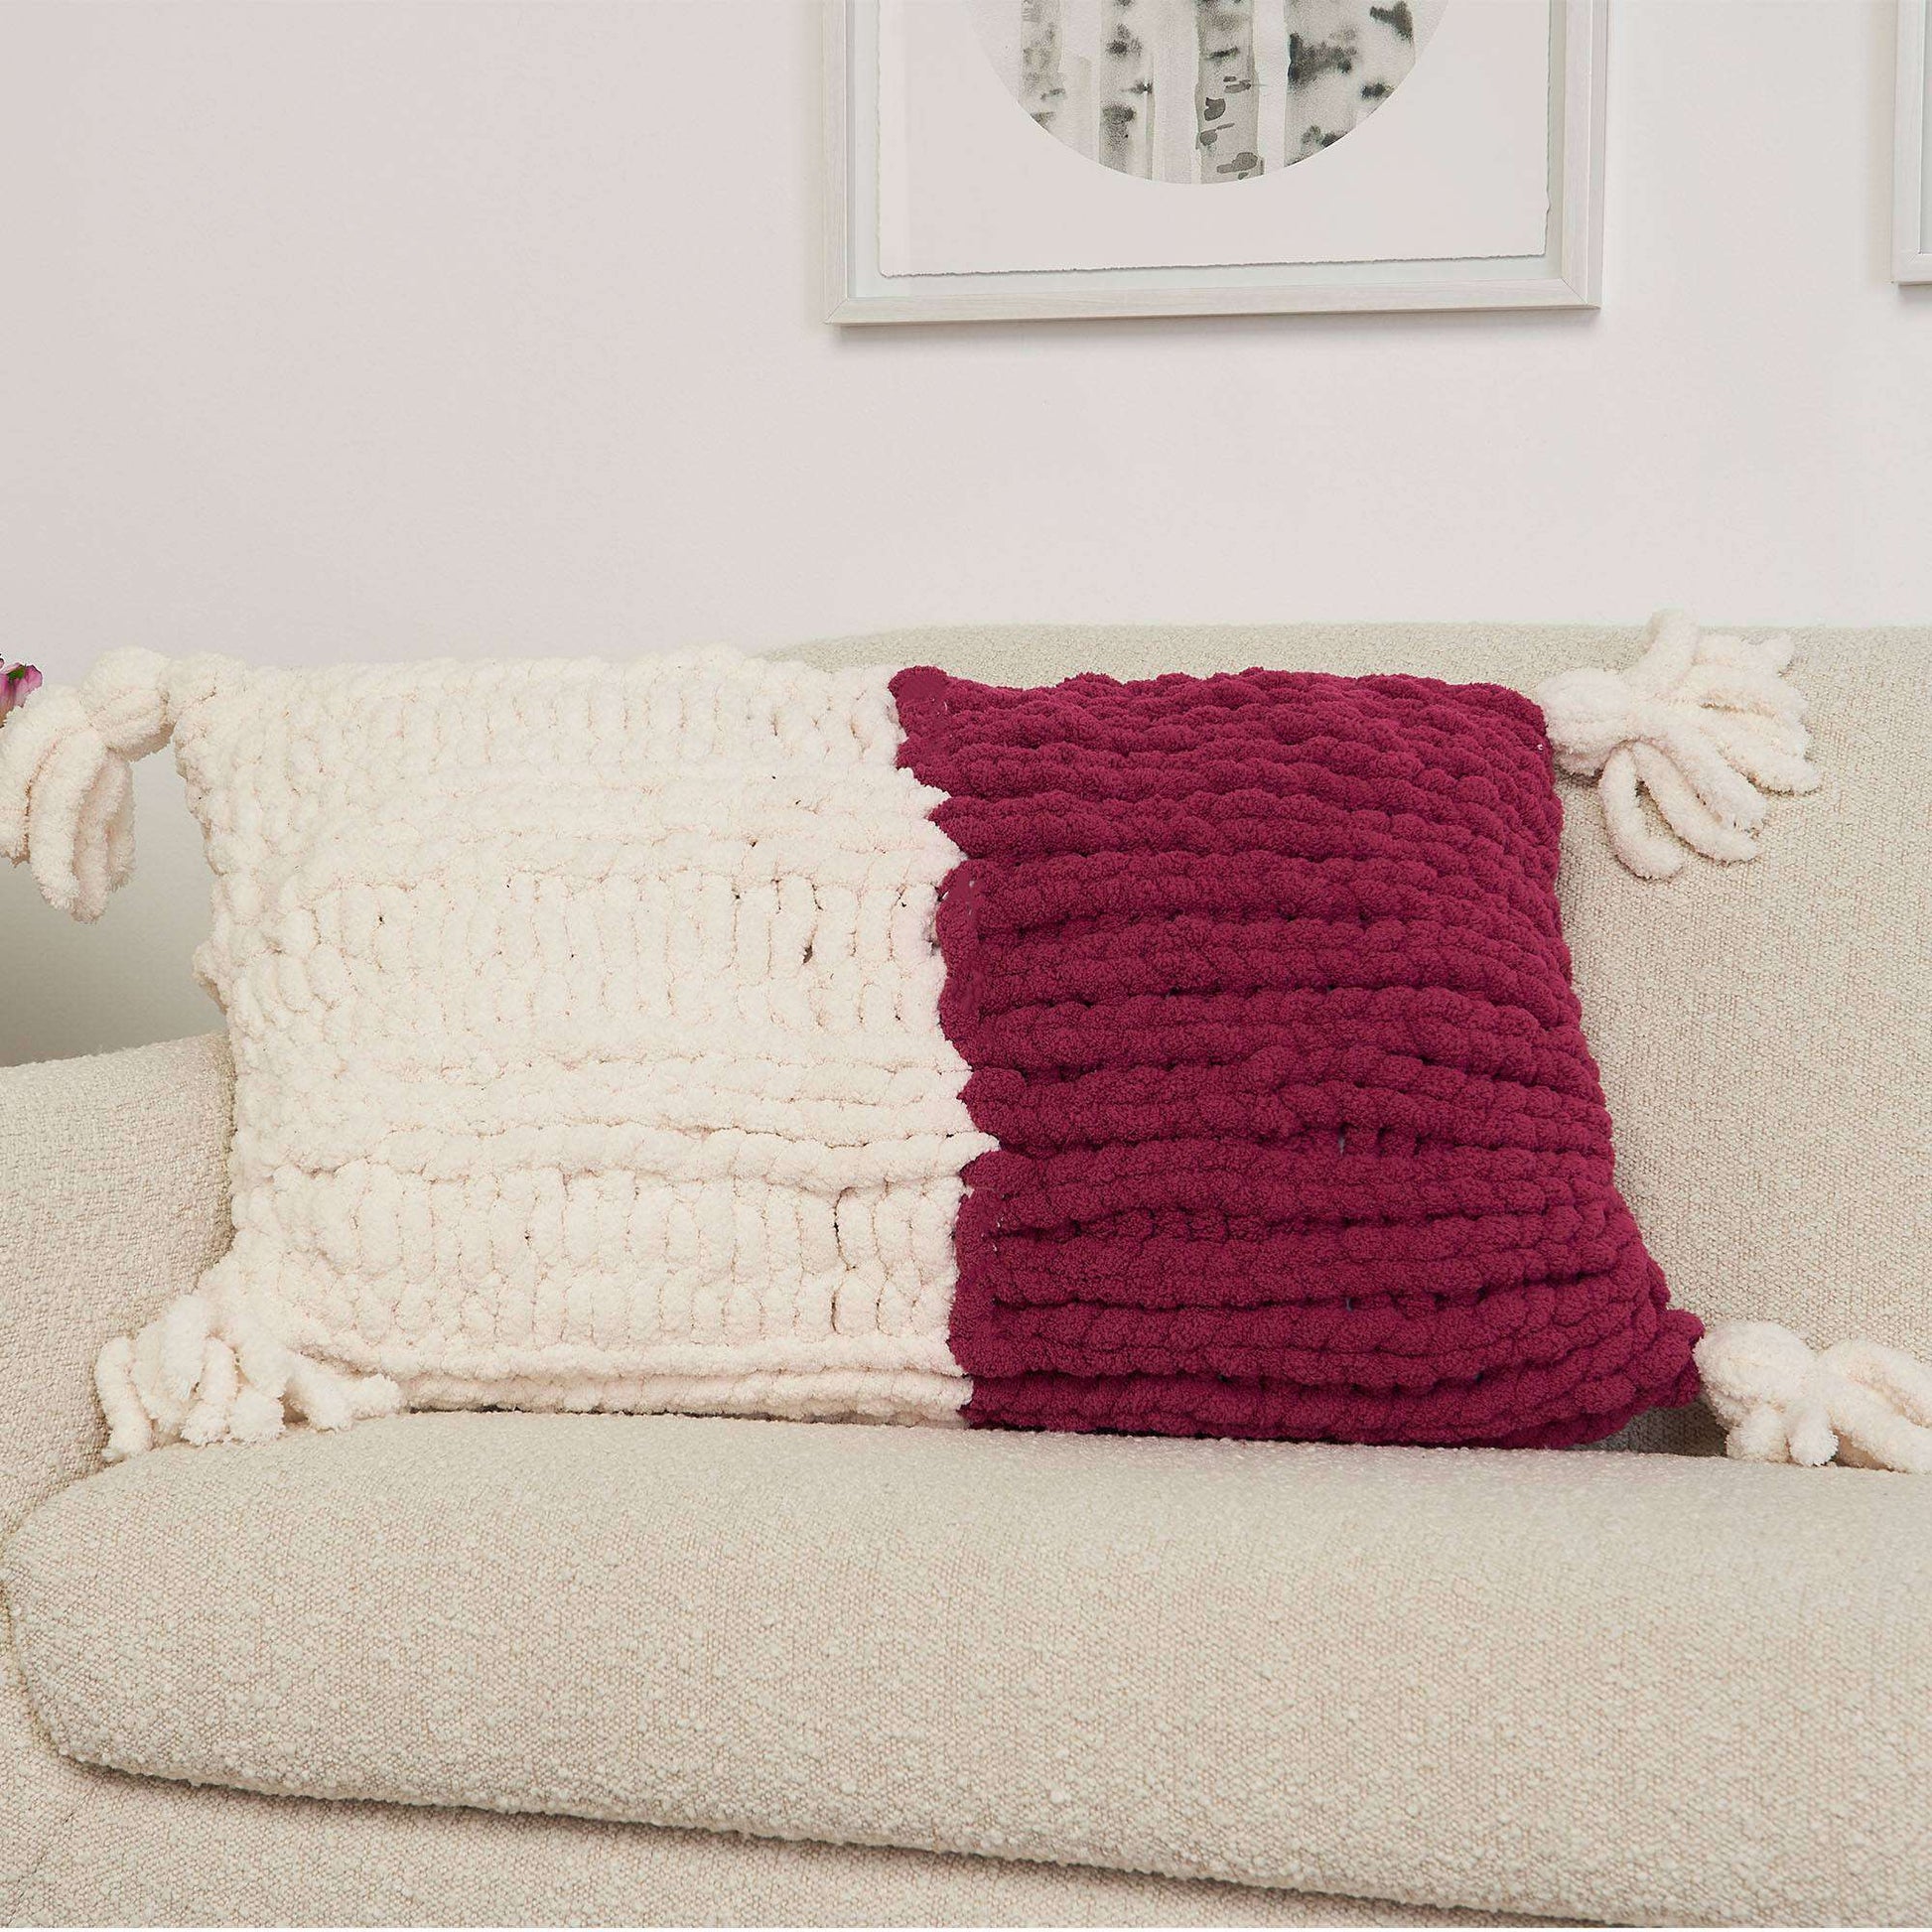 Free Bernat Big Cuddle Knit Pillow Pattern